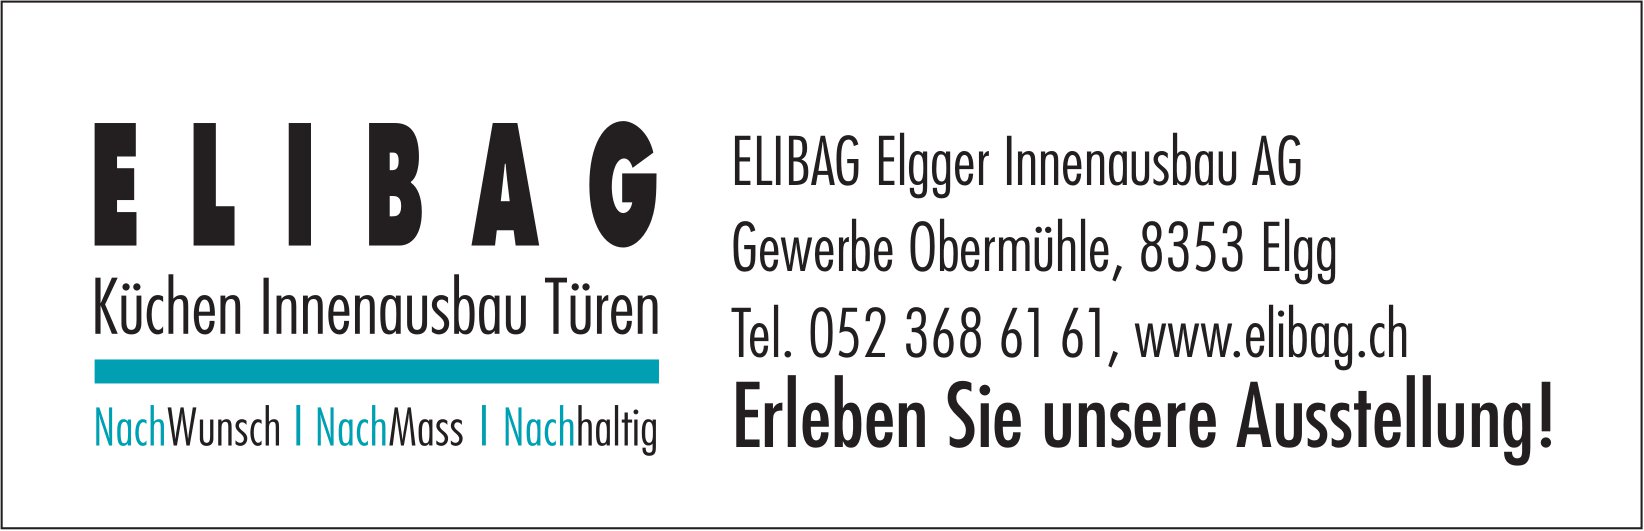 Elibag Elgger Innenausbau AG, Elgg - Erleben Sie unsere Ausstellung!